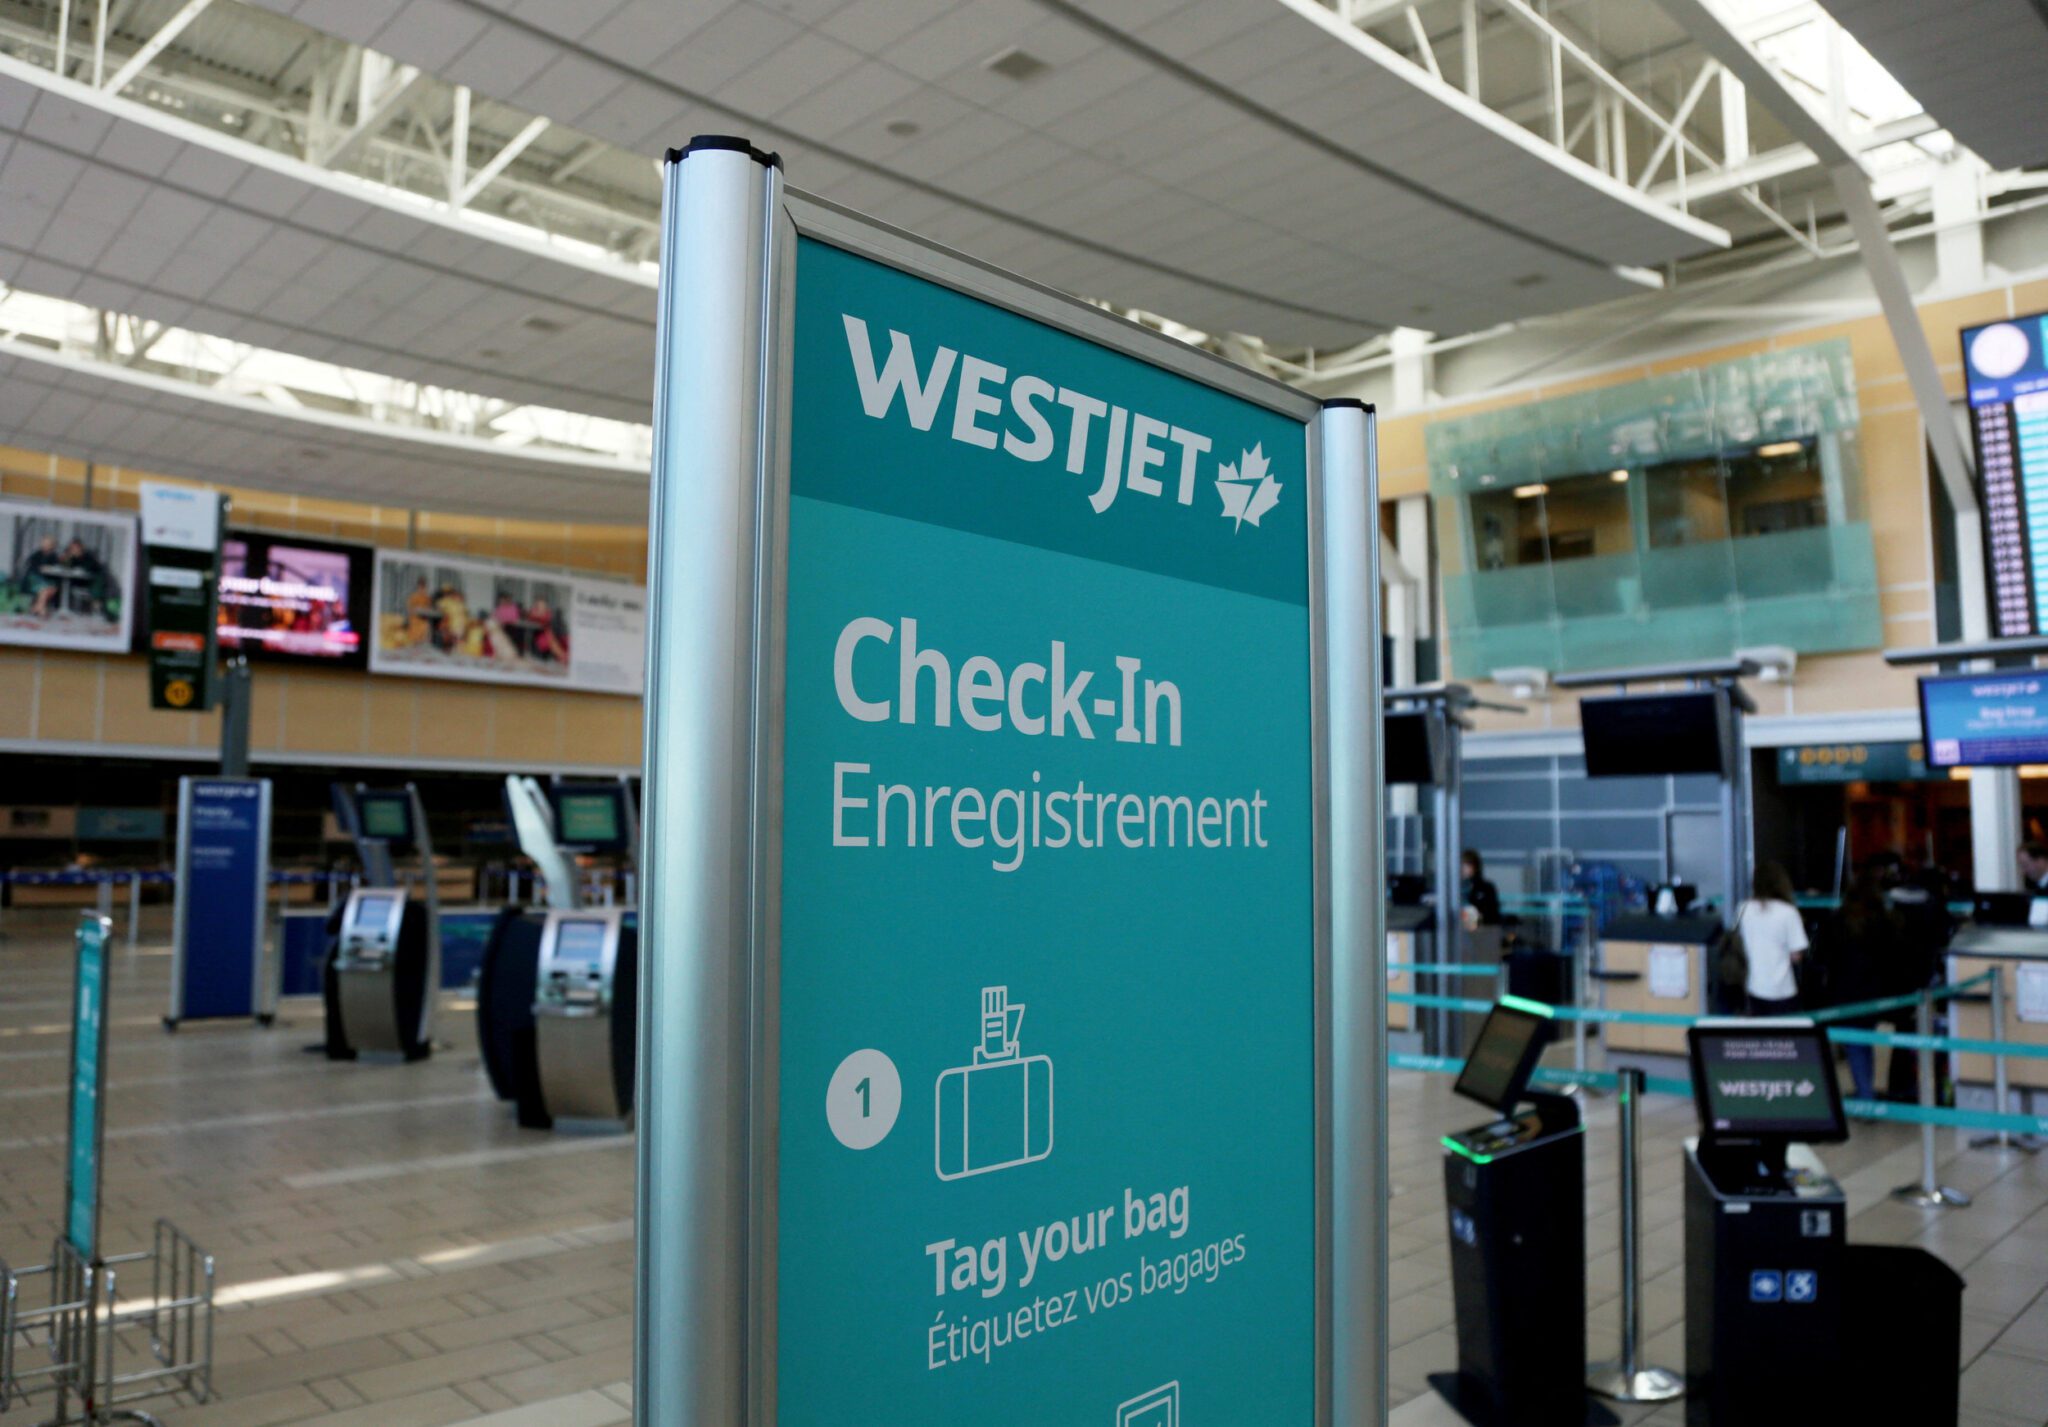 WestJet Has a New Deal to Raise Pilot Pay